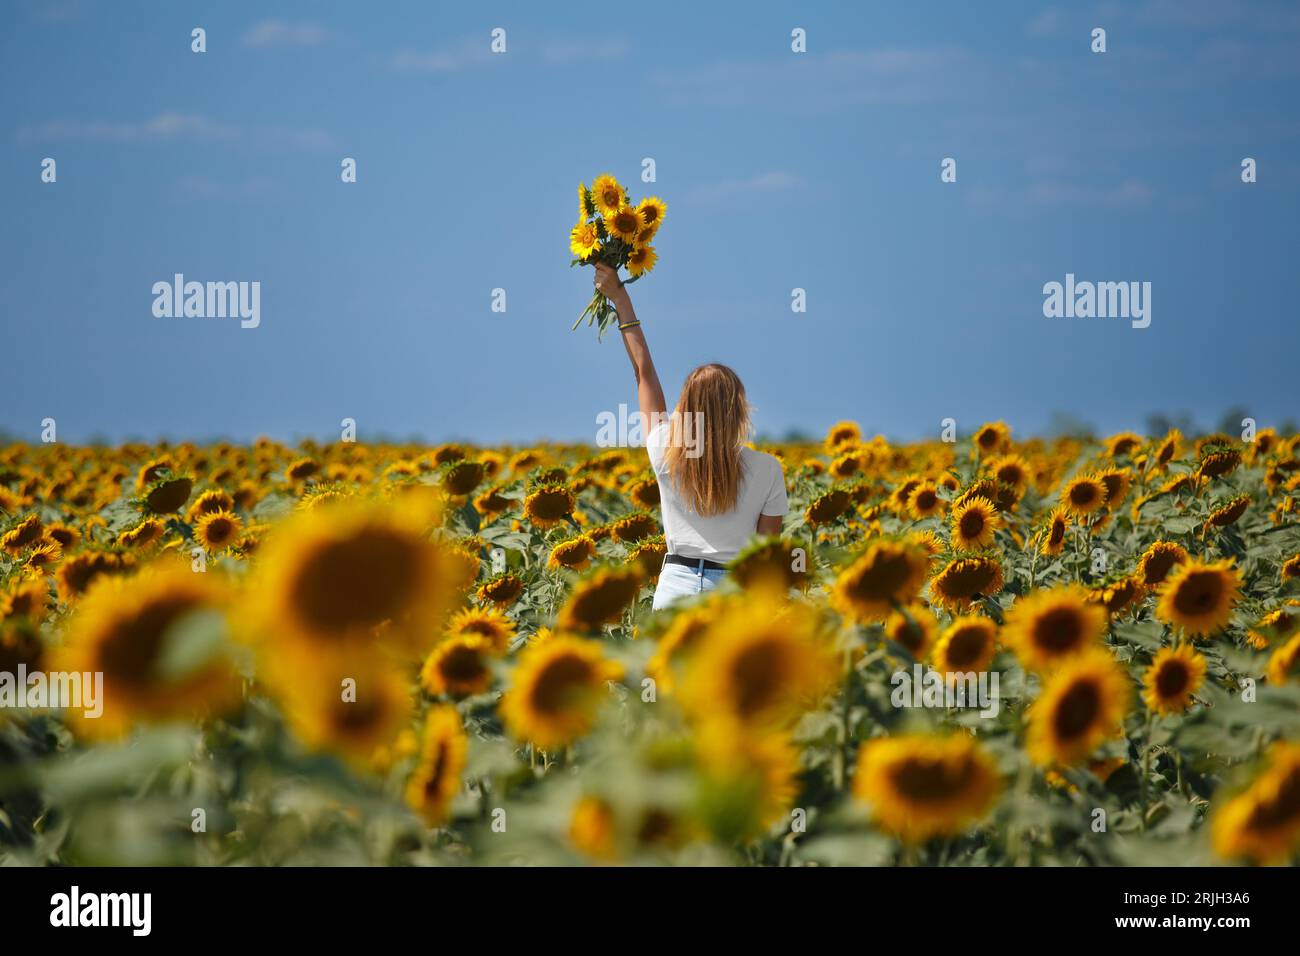 La ragazza si trova in un campo di girasoli, alzando la mano con un mazzo di girasoli. Foto Stock